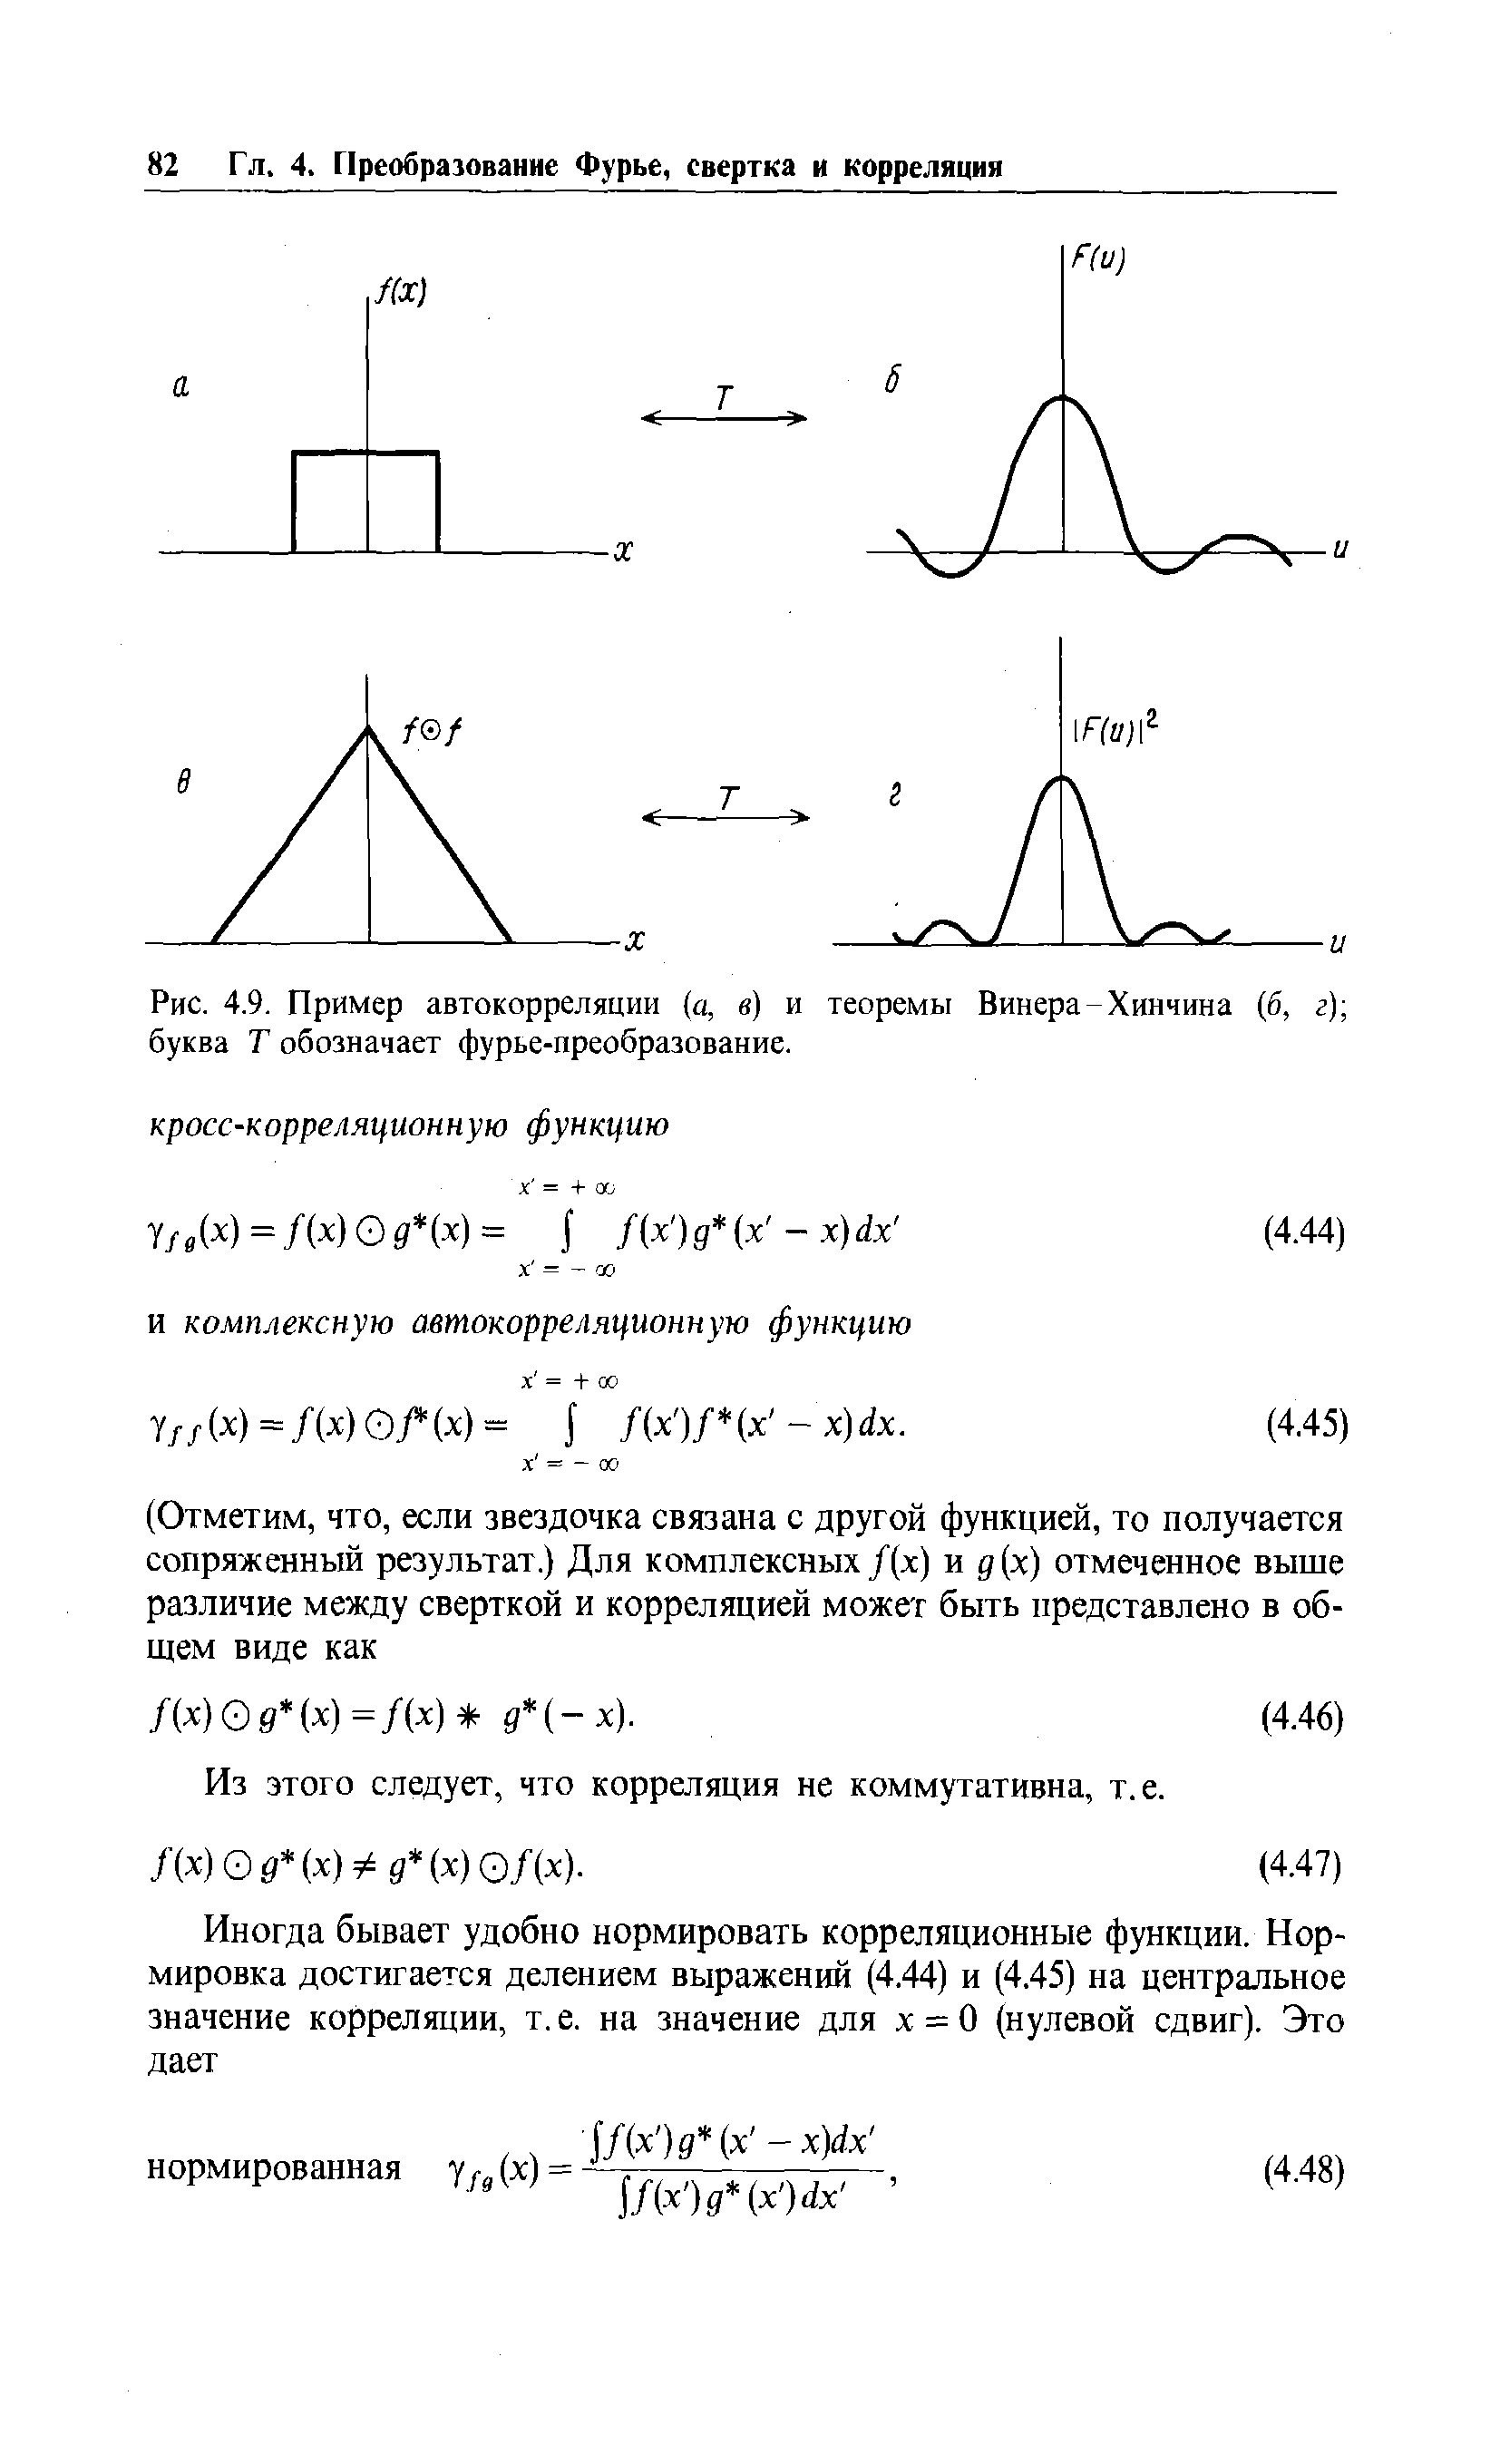 Рис. 4.9. Пример автокорреляции (а, в) и теоремы Винера-Хинчина (б, г) буква Т обозначает фурье-преобразование.
